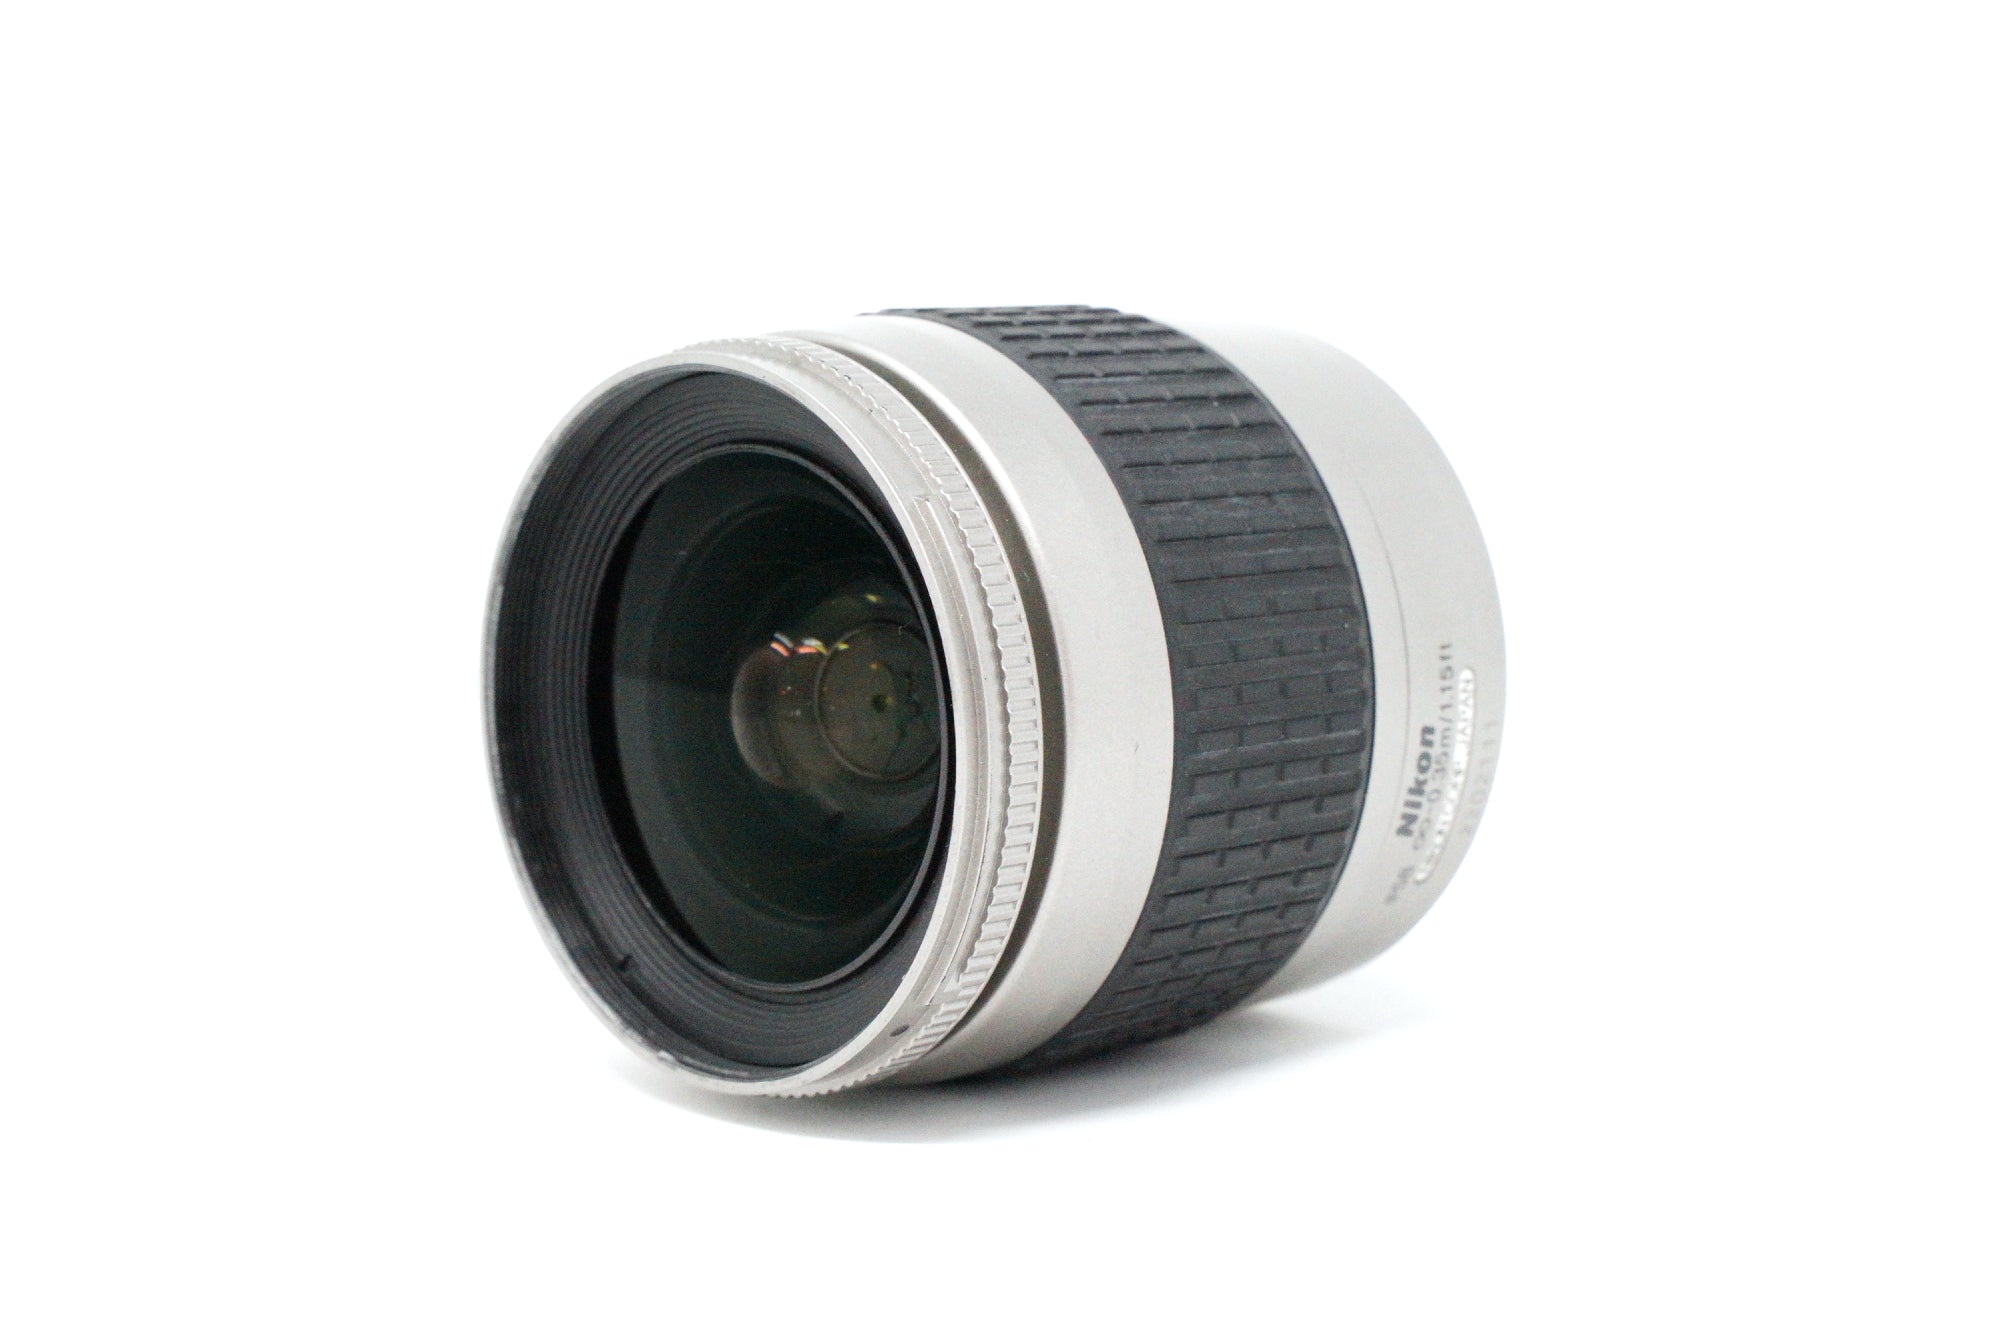 Image of Nikon AF Nikkor 28-80mm F/3.5-5.6G lens front side